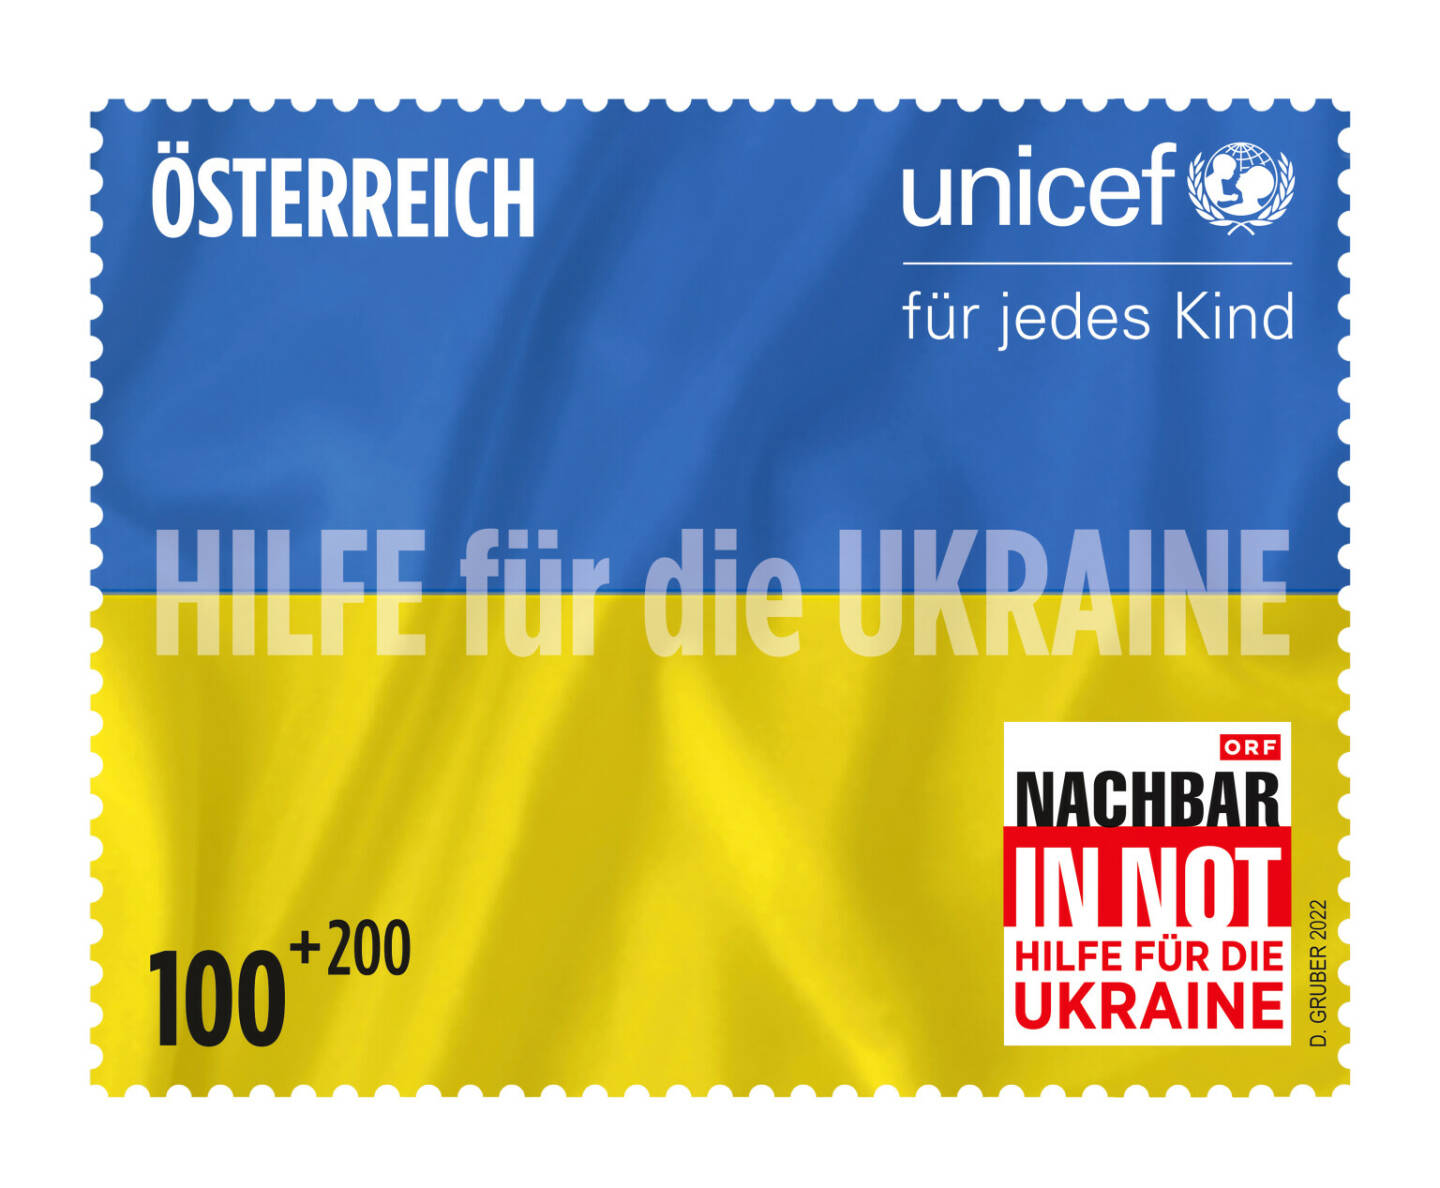 Österreichische Post AG: Humanitäre Hilfe: Post transportiert Pakete kostenlos in die Ukraine, Sujet der Ukraine-Sonderbriefmarke Gemeinsam für den Frieden. Credit: Österreichische Post AG